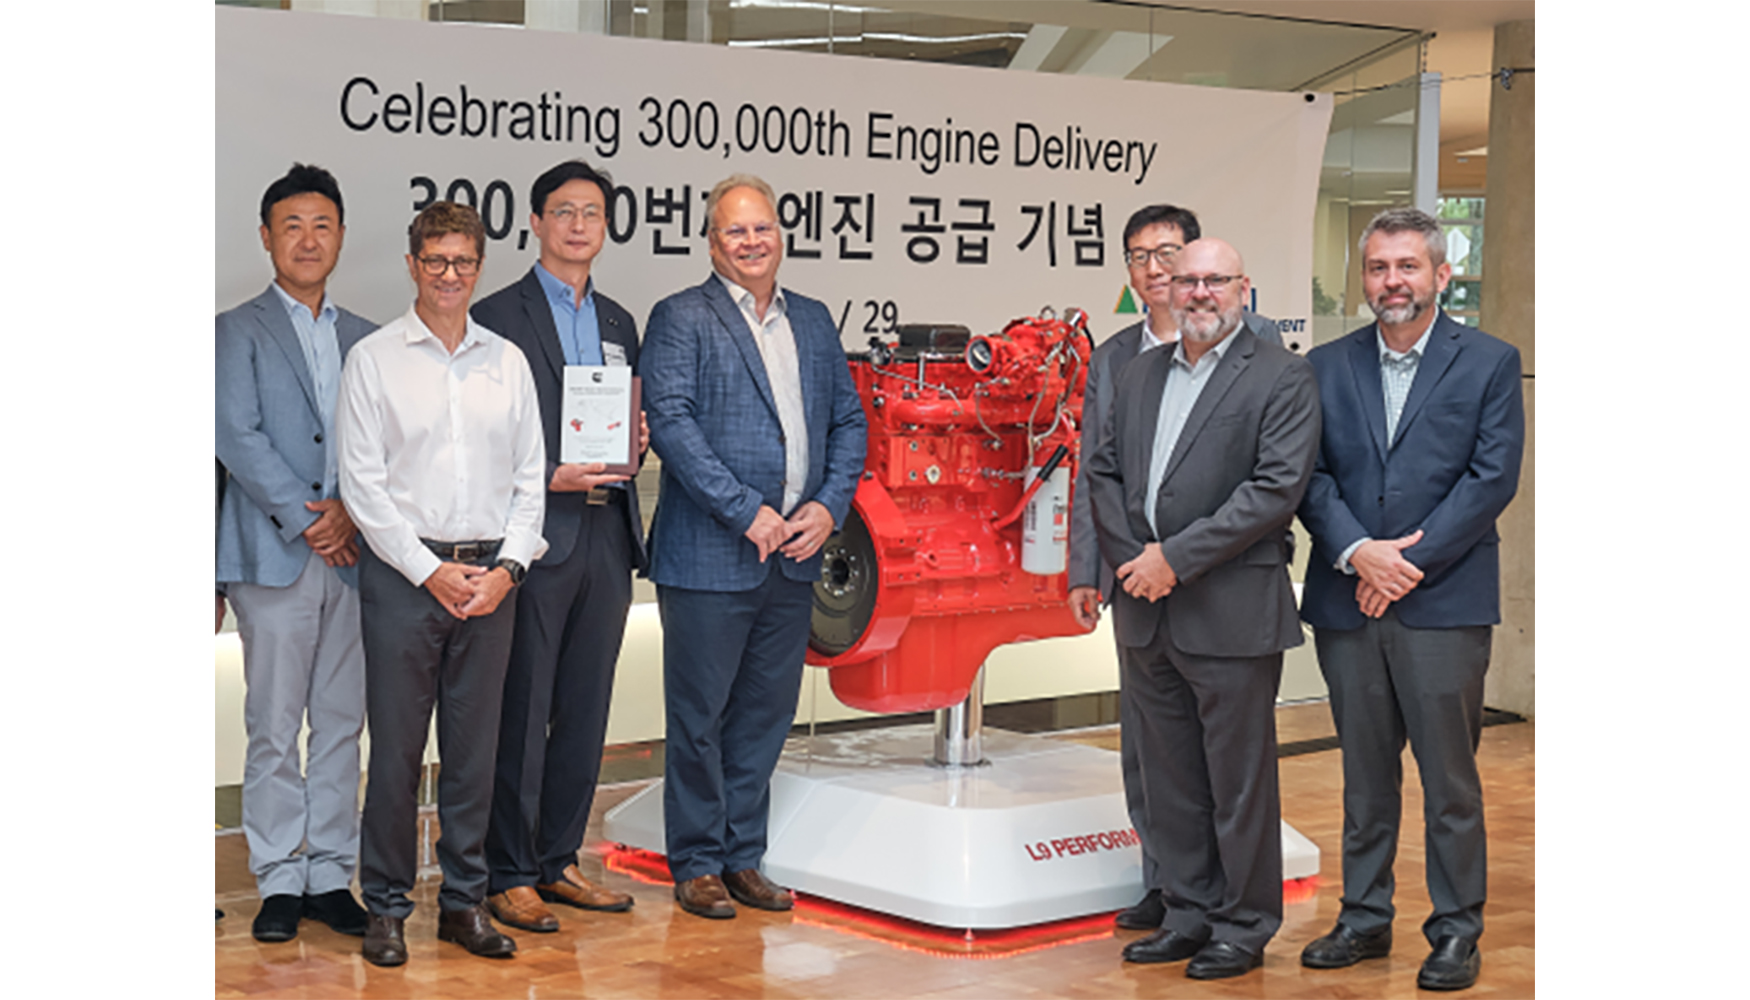 Acto conmemorativo de la entrega de los 300.000 motores Cummins a Hyundai Construction Equipment